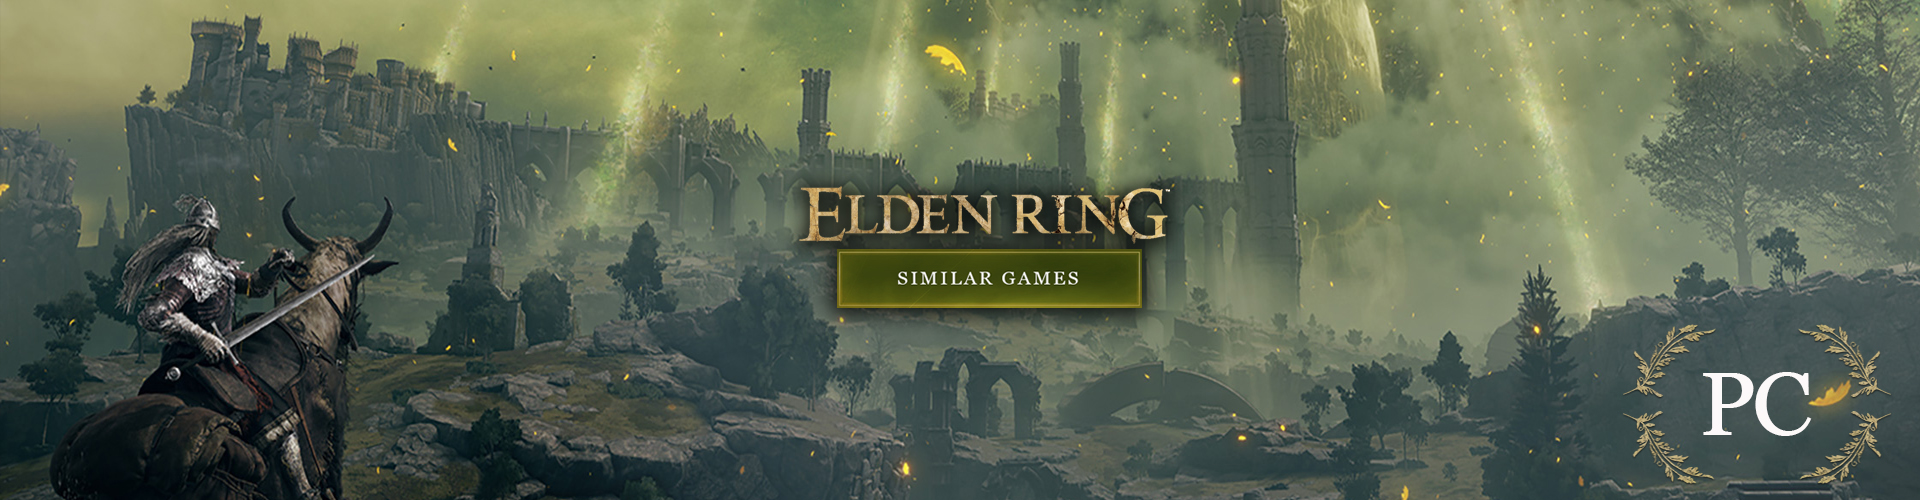 PC Games like Elden Ring